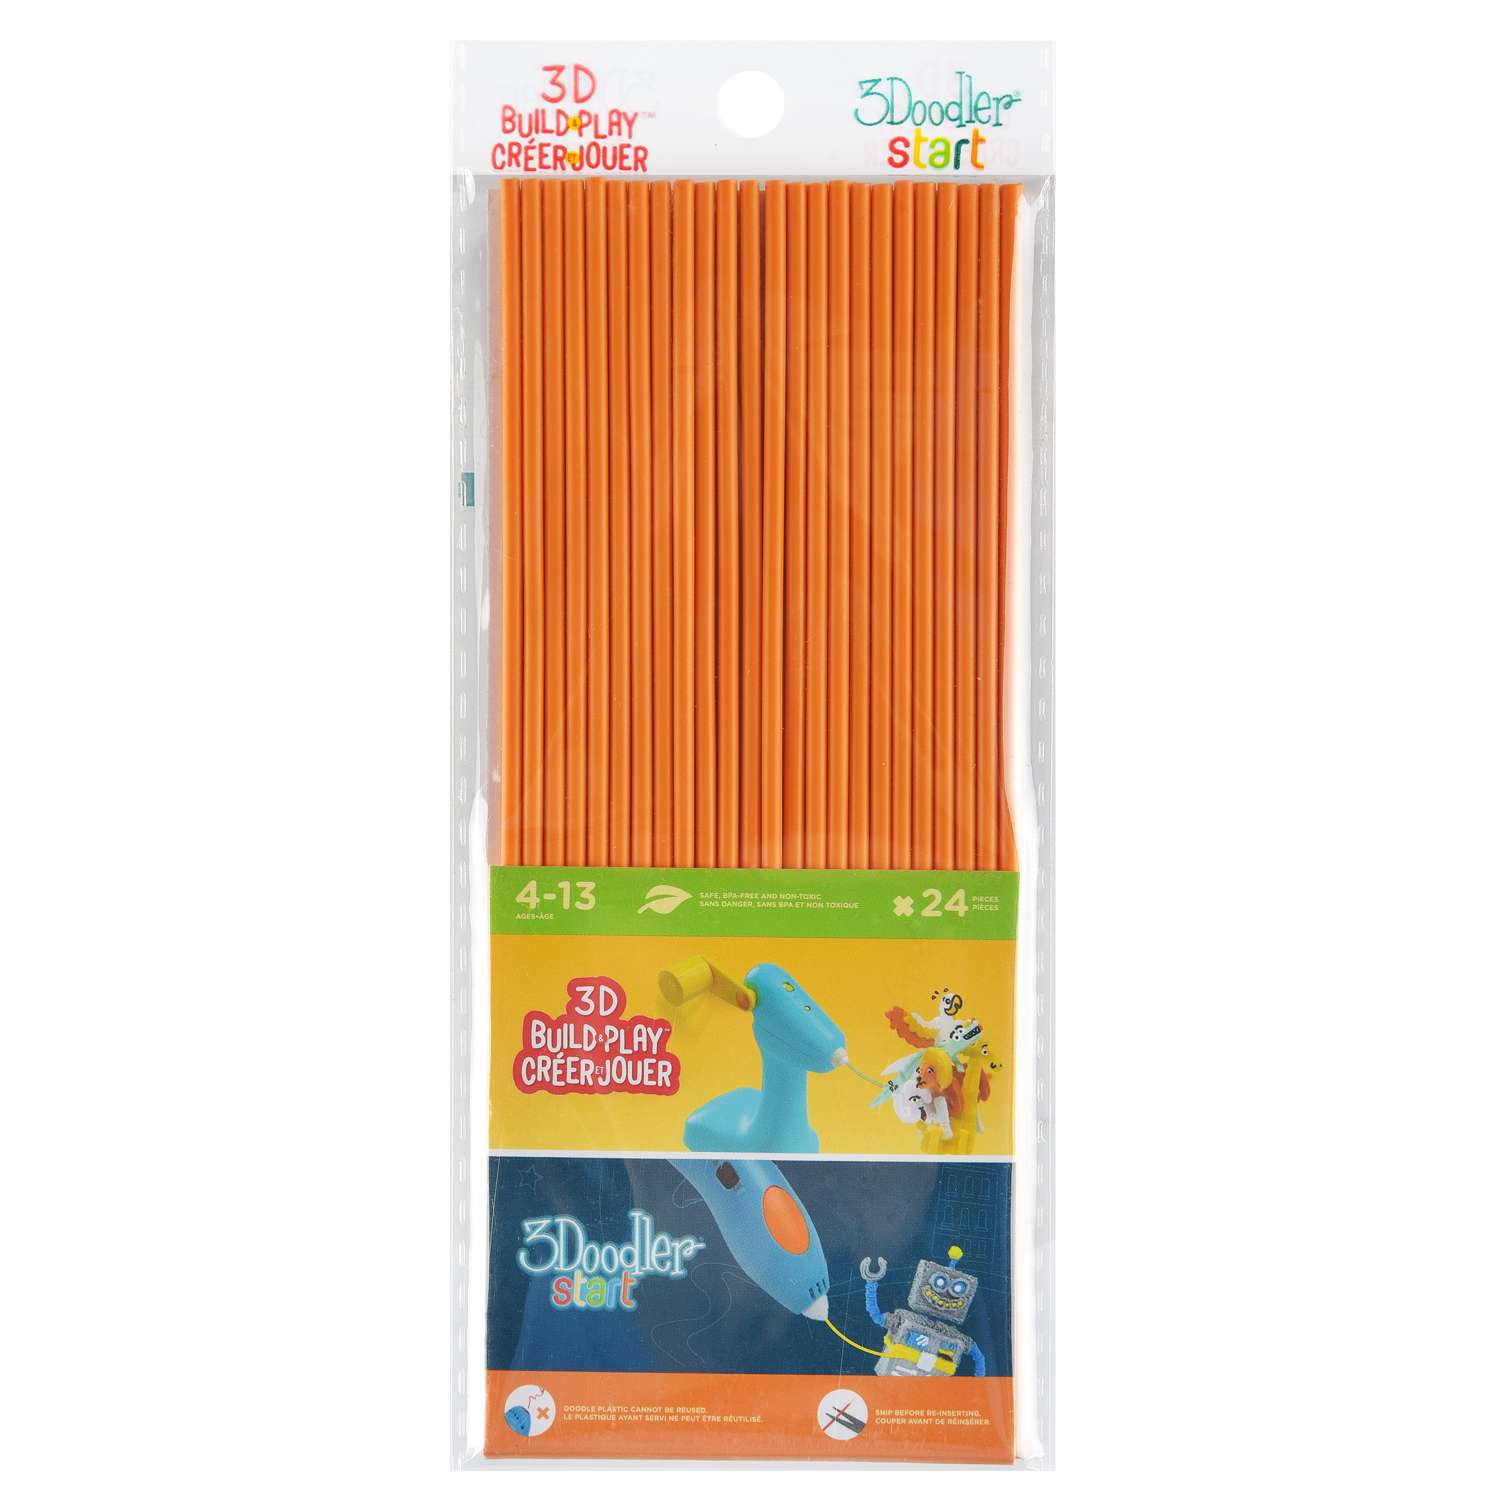 Эко пластик к 3Д ручке 3Doodler Star цвет оранжевый 24 шт - фото 1